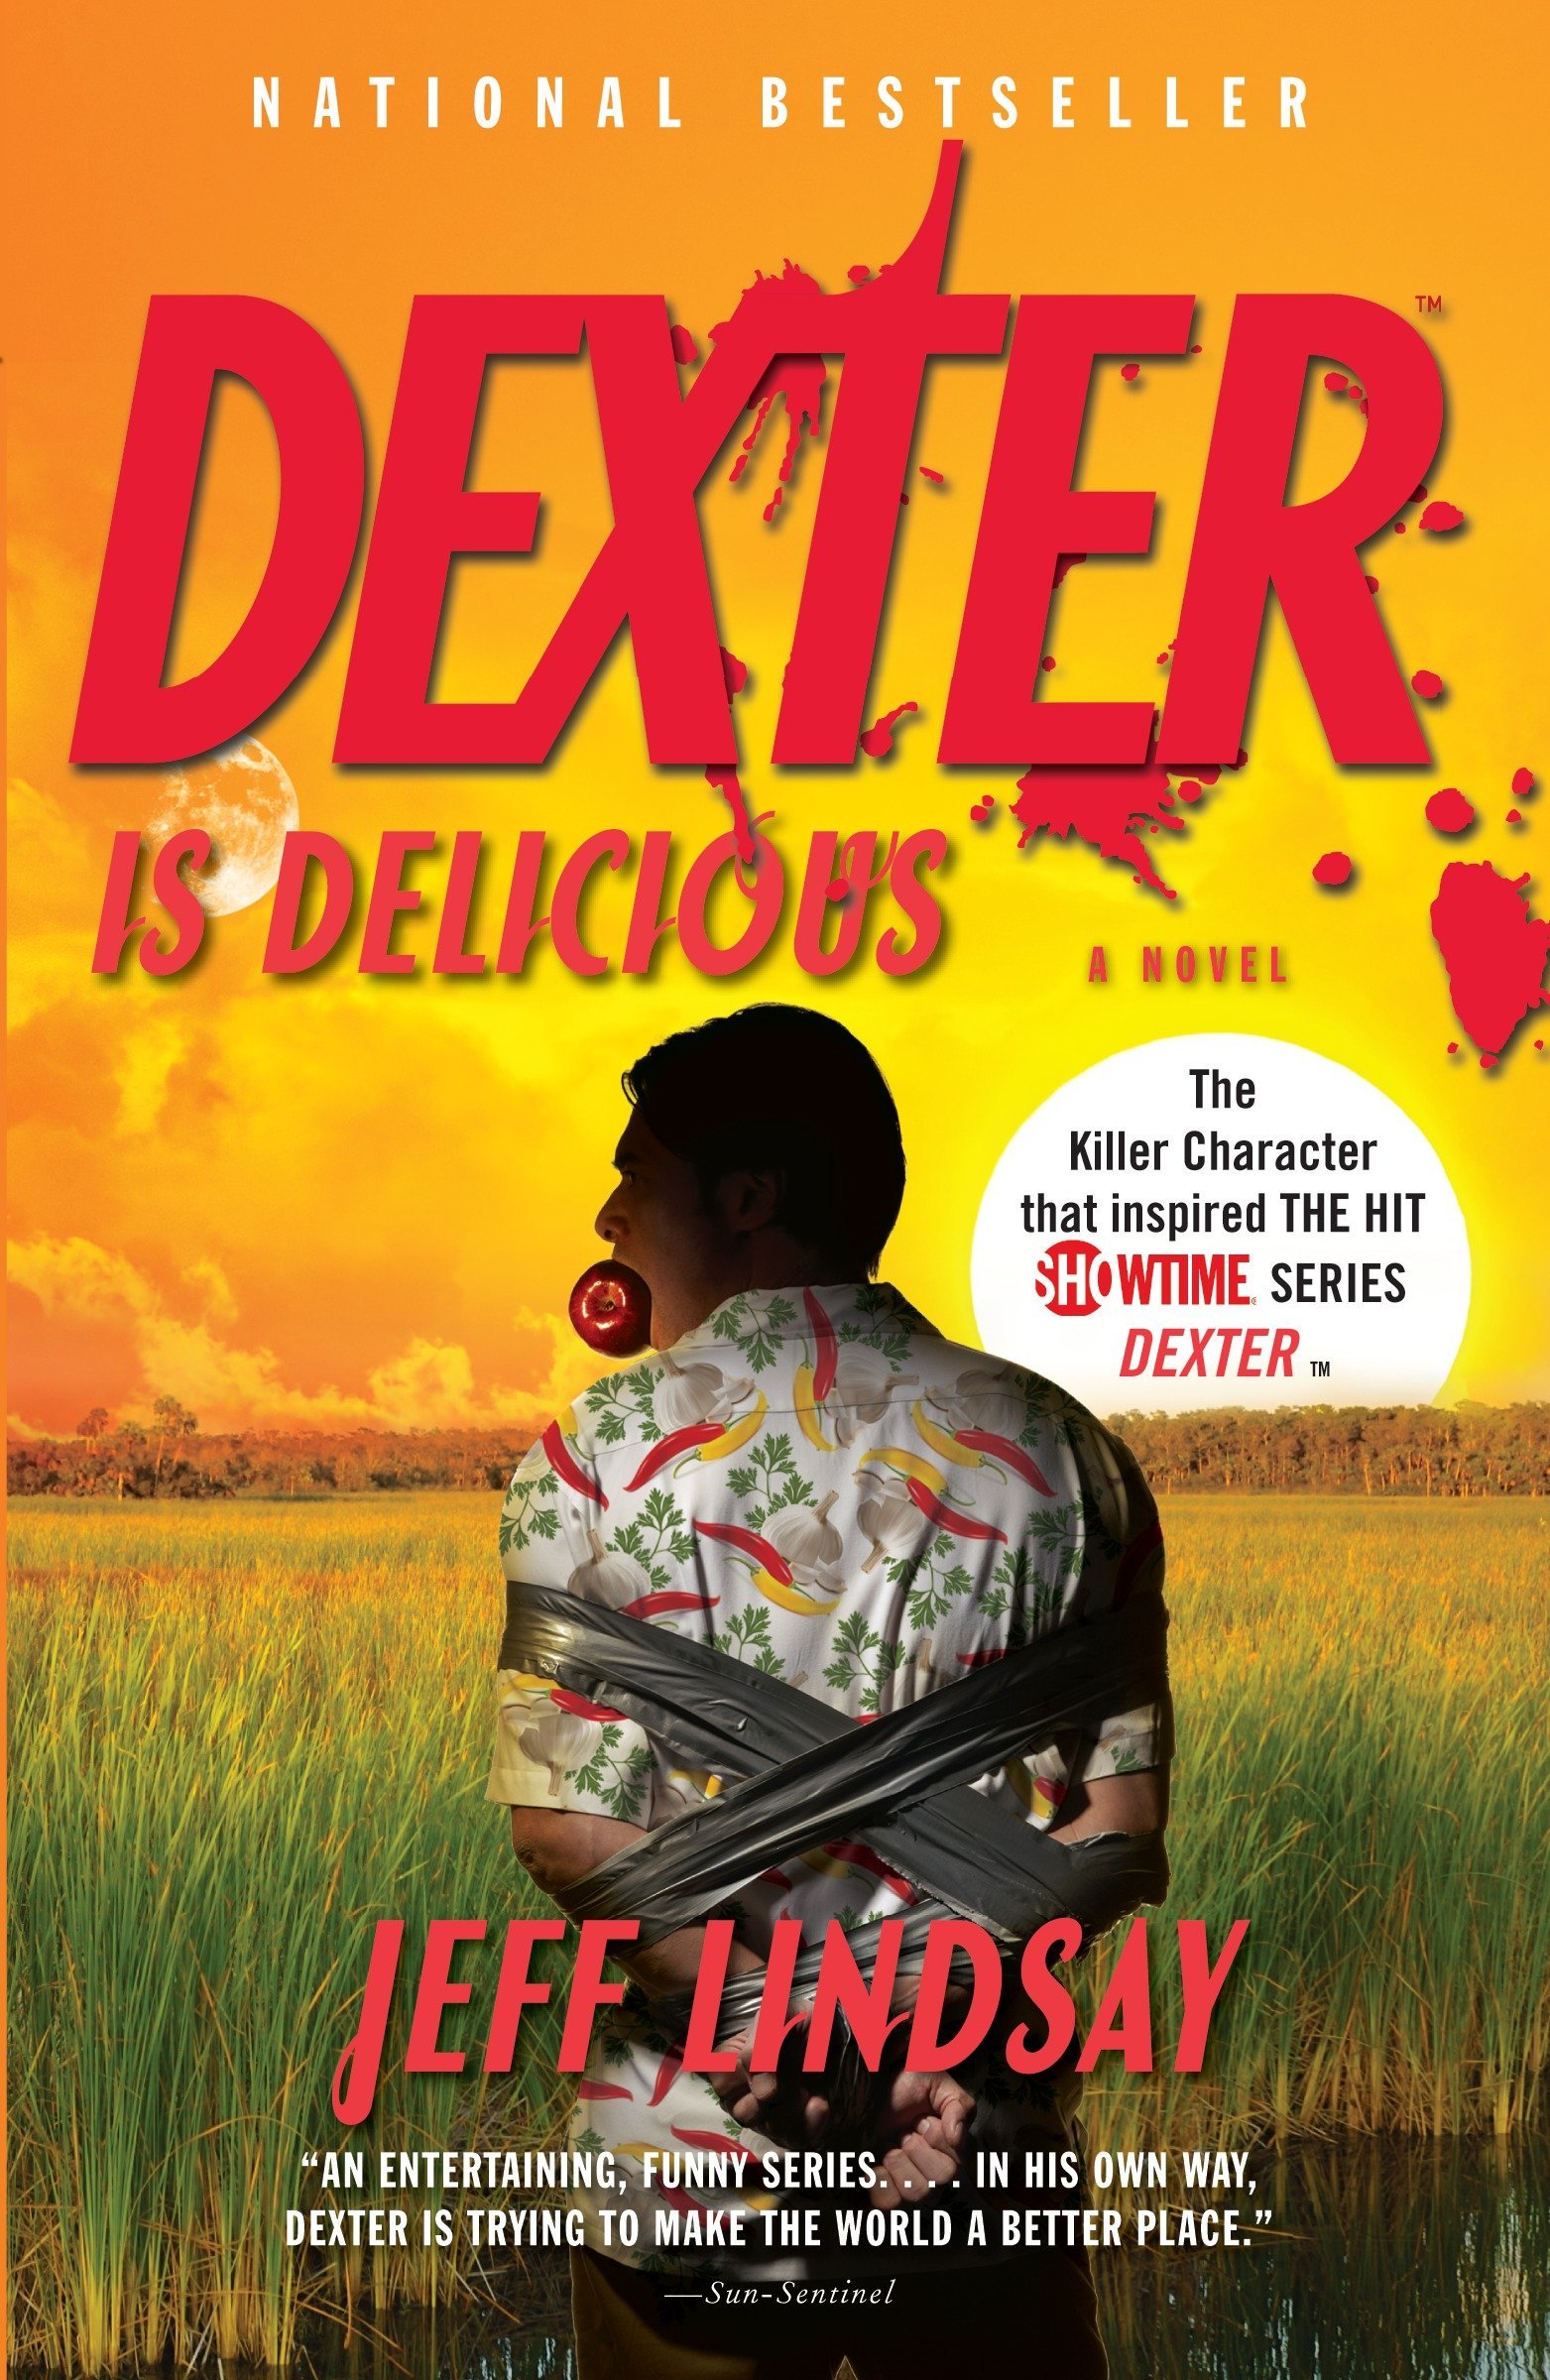  کتاب دکستر لذیز است- Dexter Is Delicious by Jeff Lindsay